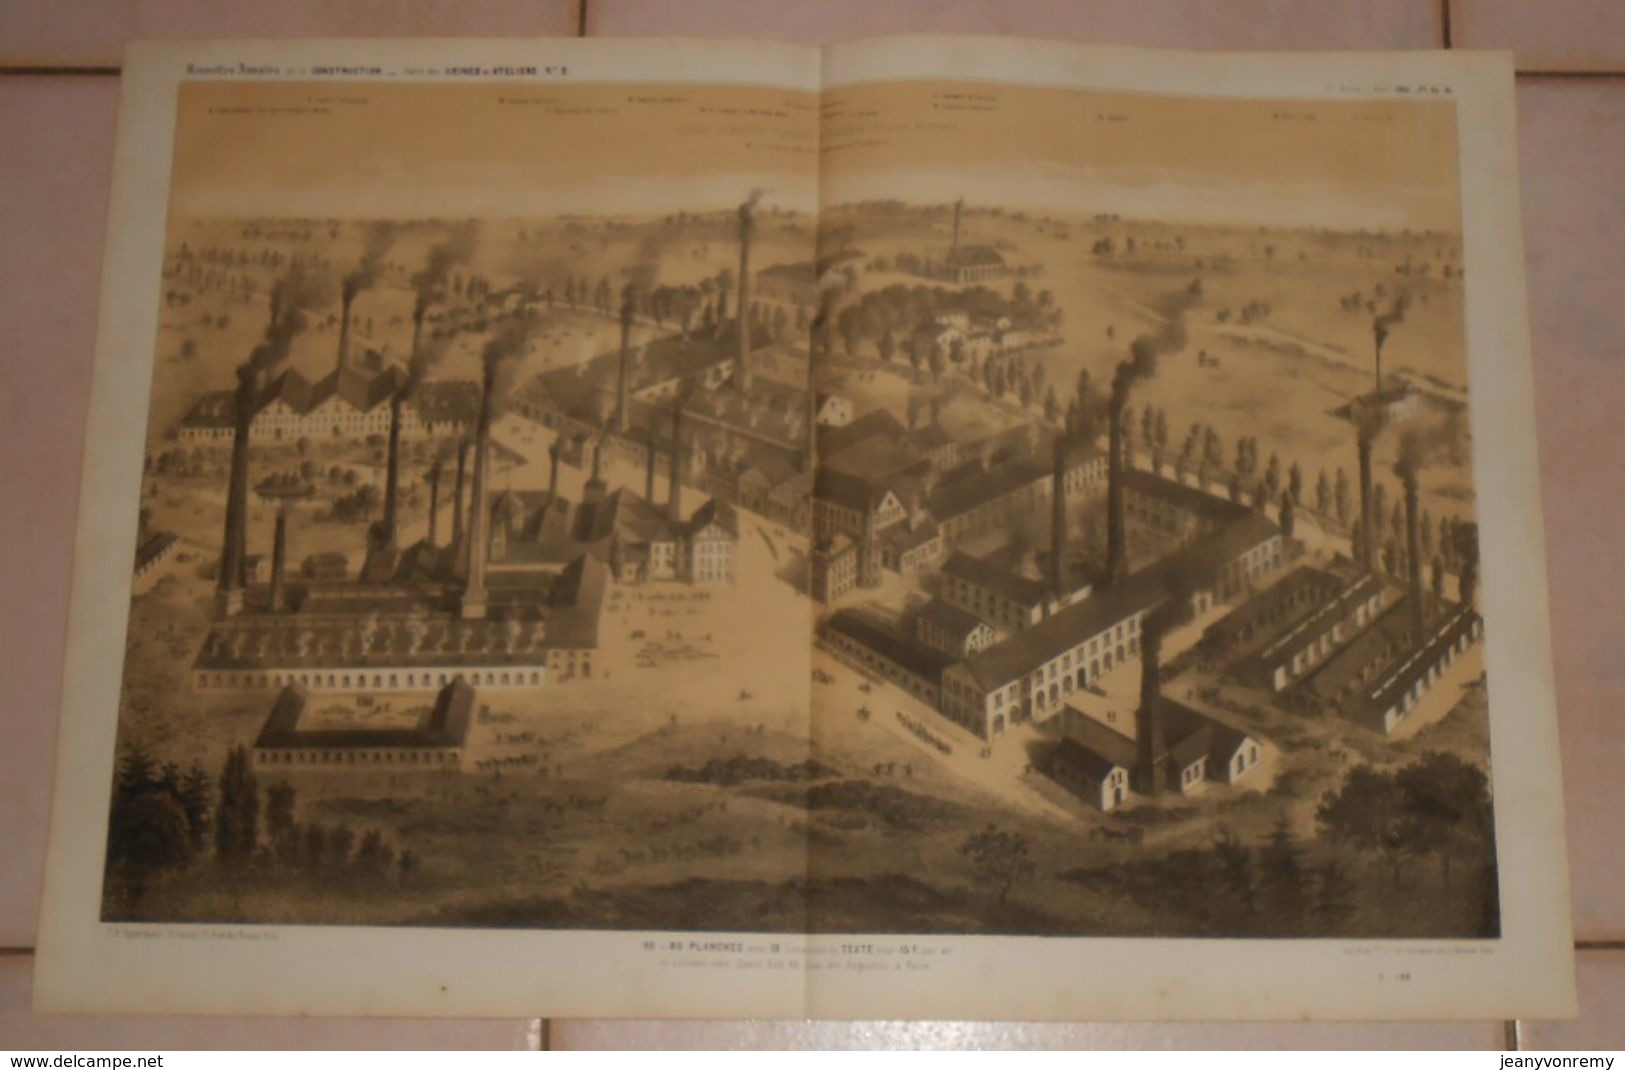 Plan De L'usine D'acier Fondu D'Essen En Prusse Rhénane. M. Frédéric Krupp, Propriétaire Fondateur. 1861 - Public Works